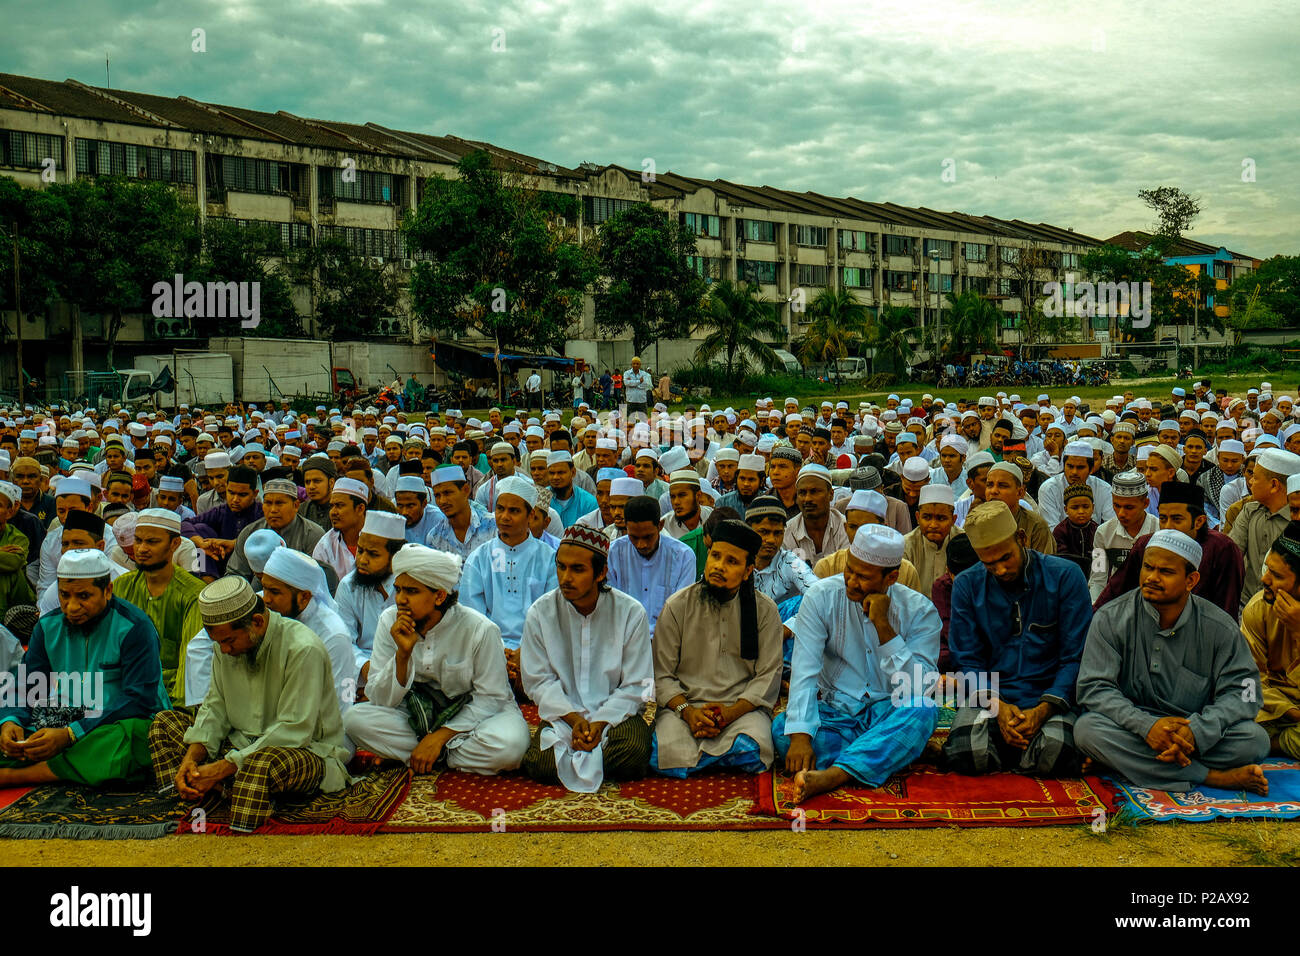 KUALA LUMPUR, Malesia - 15 giugno: musulmani Rohingyas rifugiati che vivono in Malesia partecipare alla preghiera speciali durante le celebrazioni Eid-Fitri in Selayang, Malaysia il 15 giugno 2018. Più di 60 mila rifugiati Rohingya registrati sotto la UNCHR arrivare in Malesia dal conflitto iniziano in Arakan Myanmar. Musulmani di tutto il mondo ha celebrato eid-fitri su Venerdì 15. Foto di Samsul detto/Nipponnews (Malesia) Credito: Aflo Co. Ltd./Alamy Live News Foto Stock